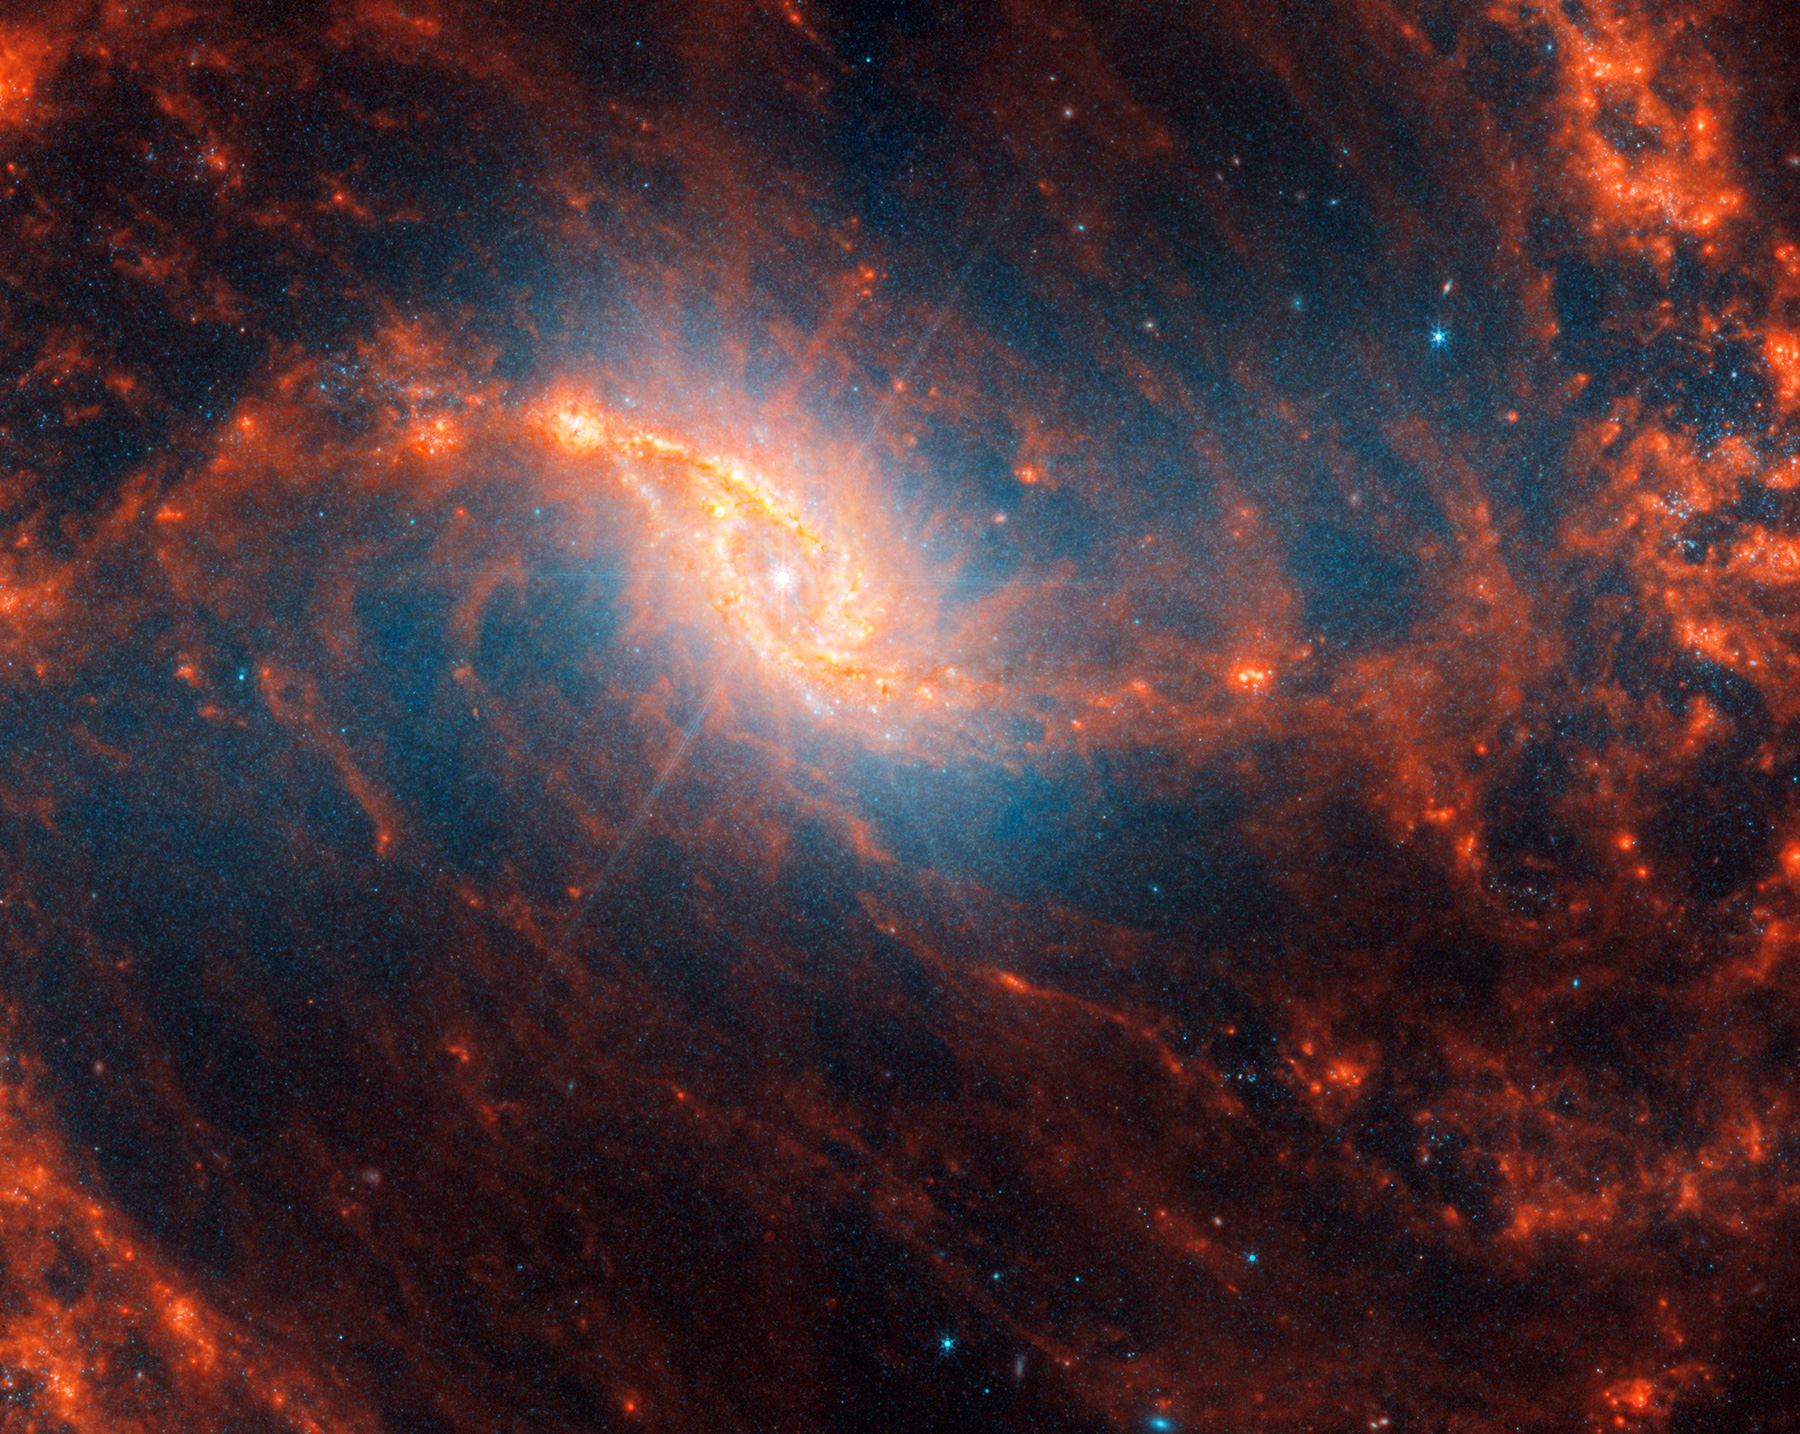 Спиральная галактика NGC 1365 в созвездии Печь. Ее диаметр составляет более 200 тыс. световых лет, что примерно вдвое больше, чем Млечный Путь